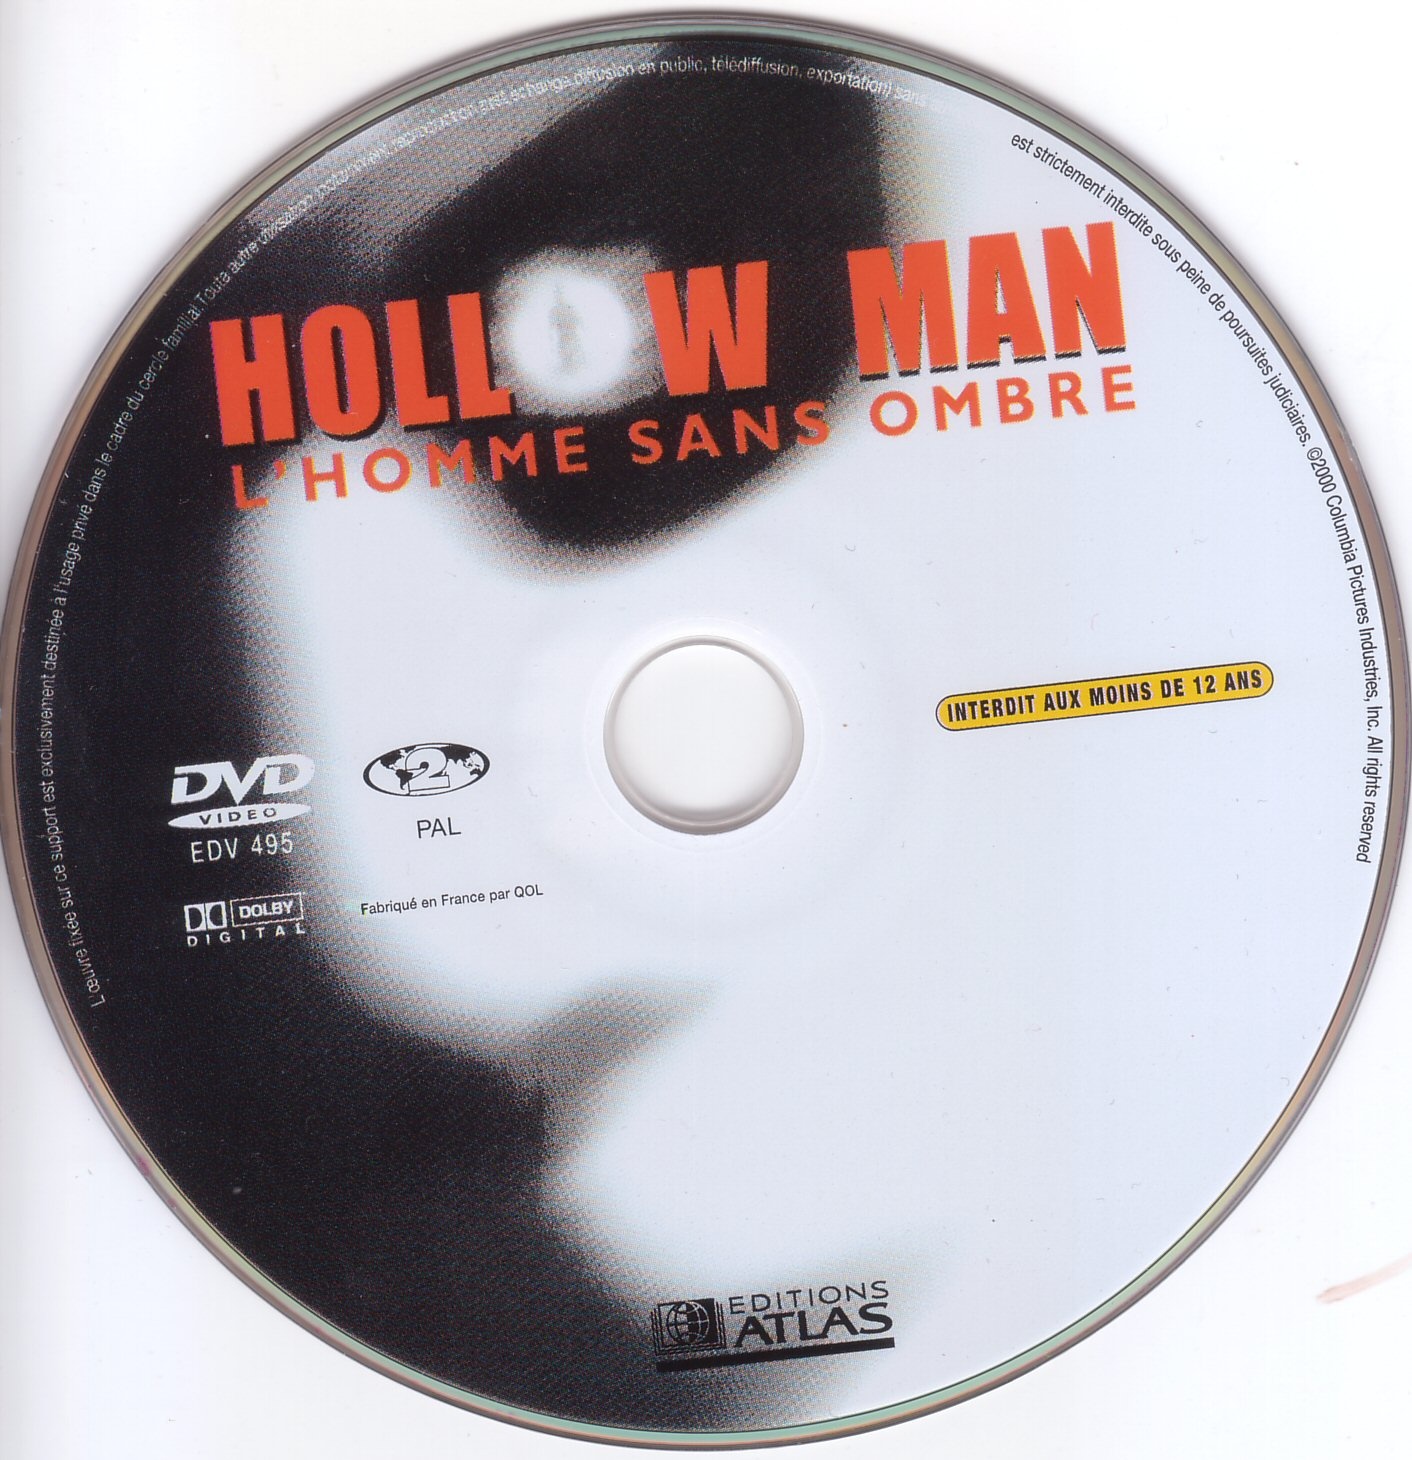 Hollow man v2